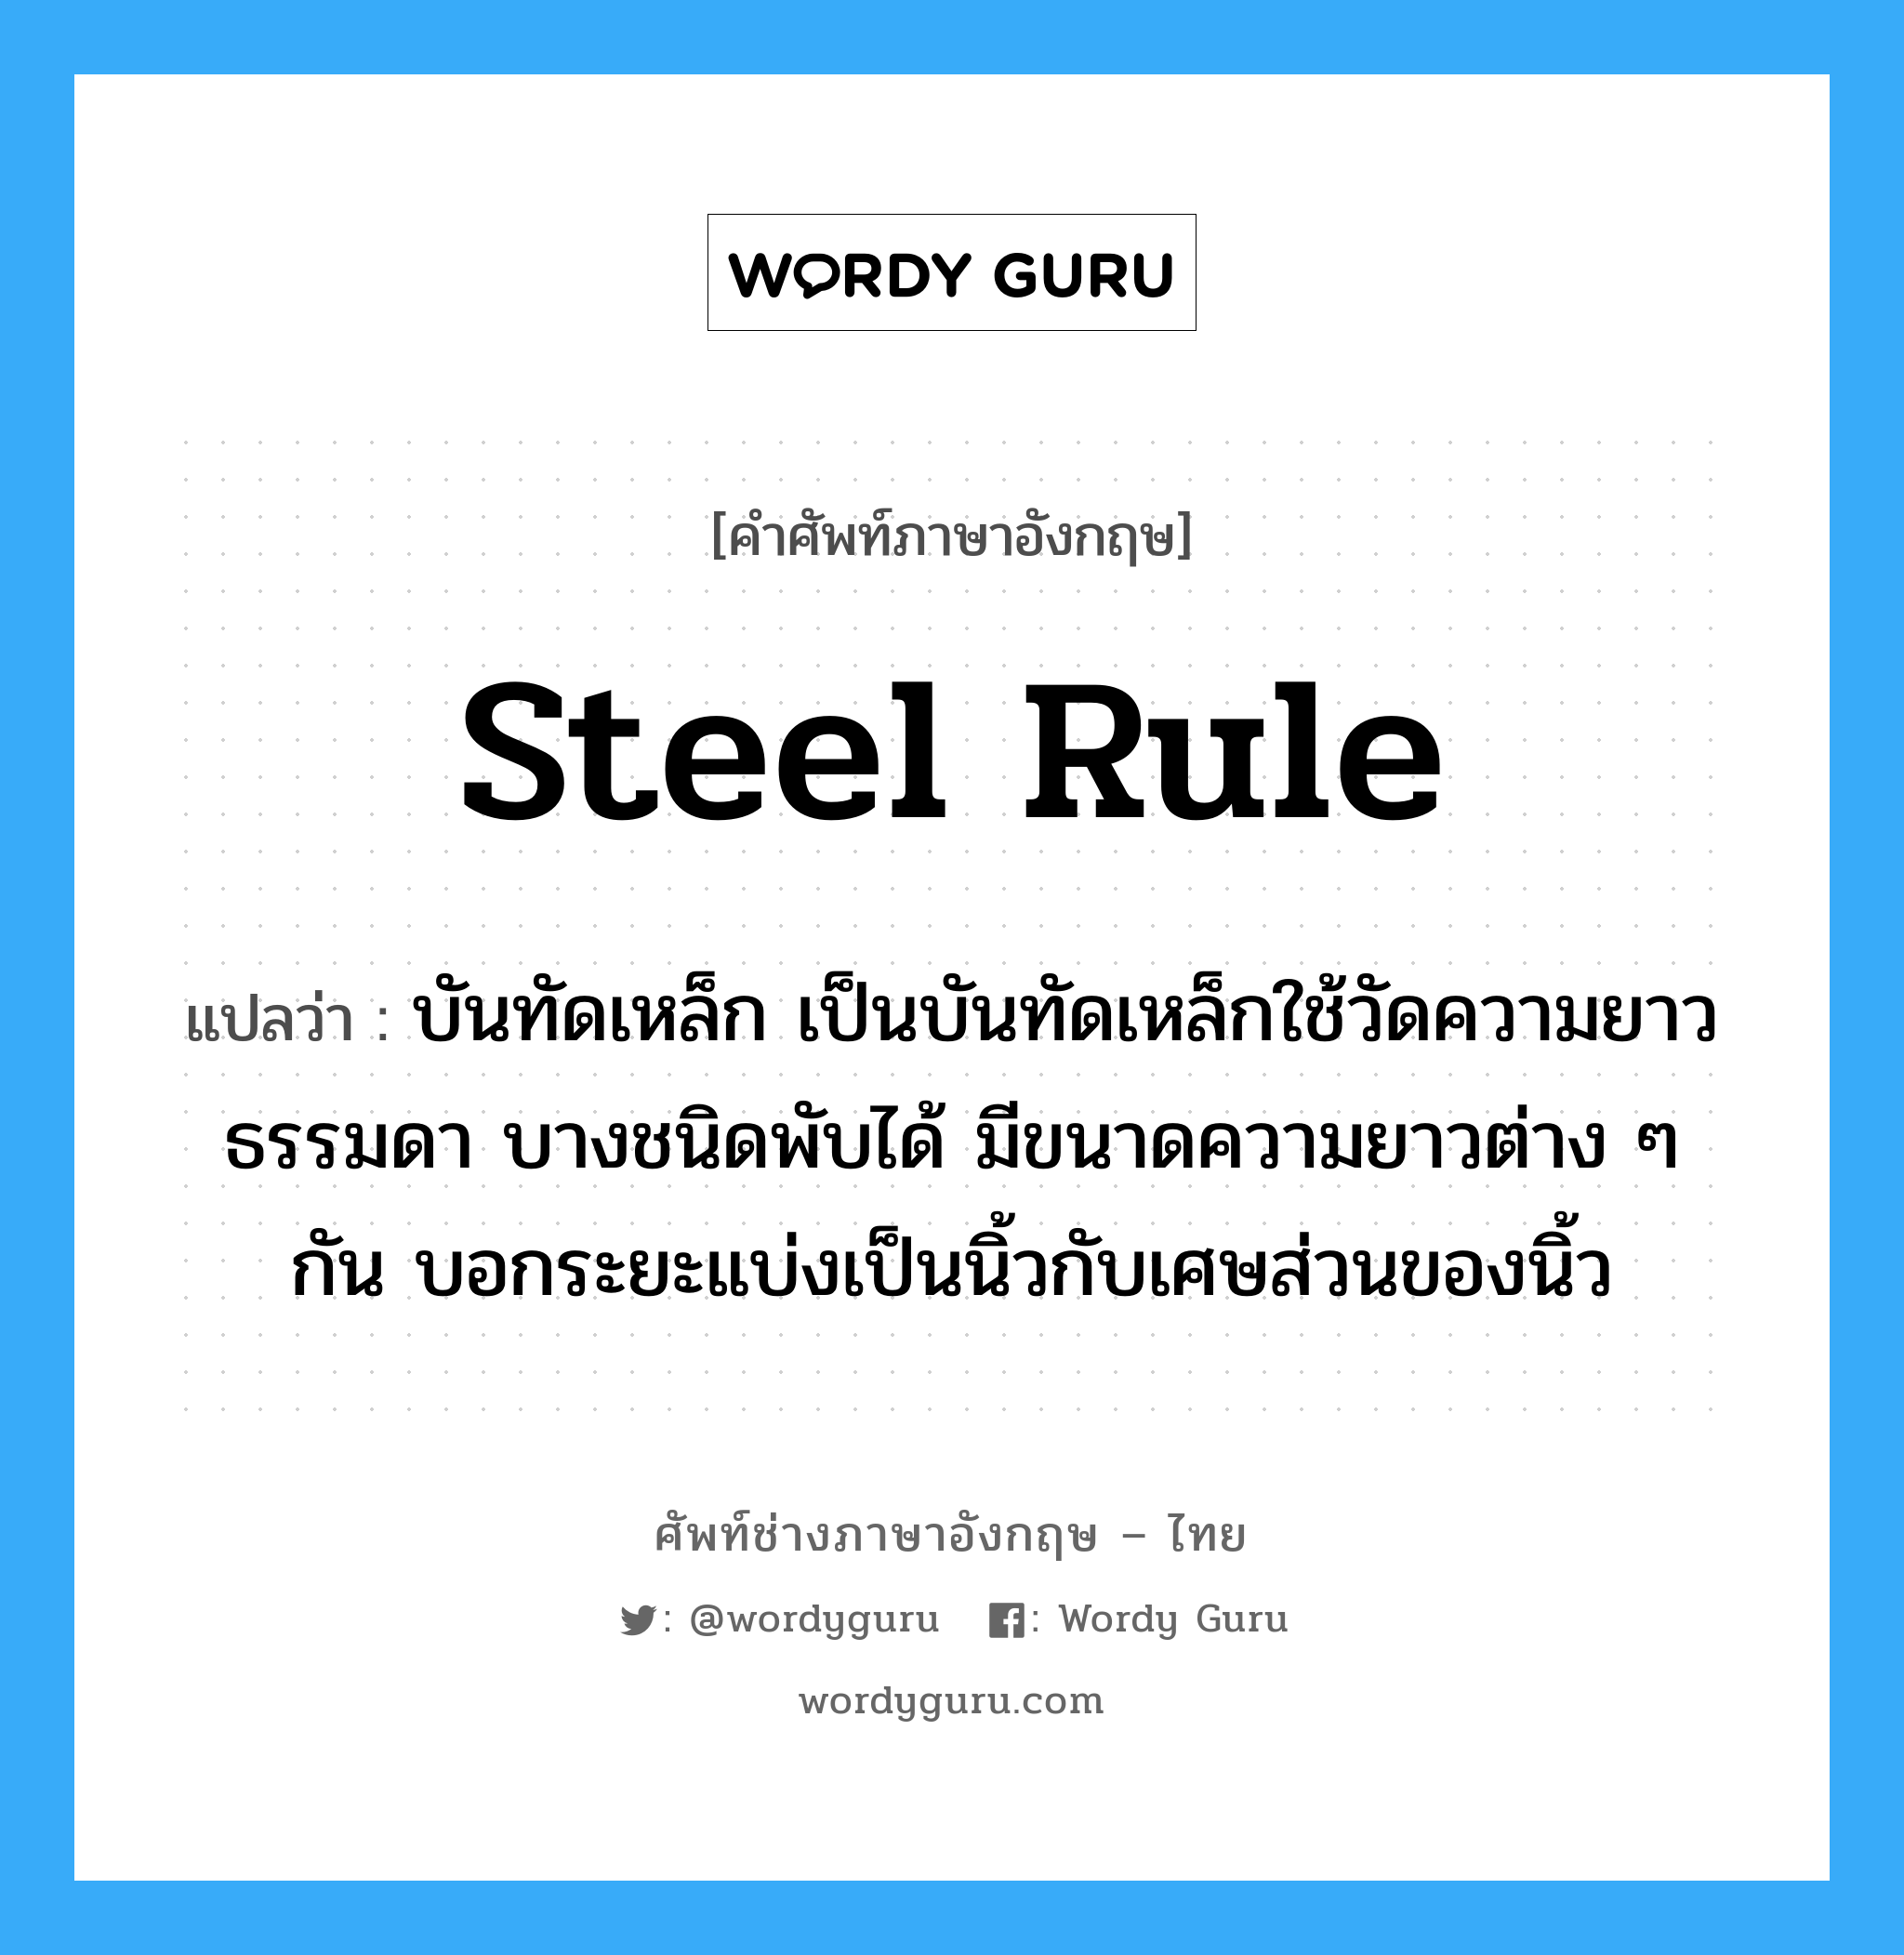 steel rule แปลว่า?, คำศัพท์ช่างภาษาอังกฤษ - ไทย steel rule คำศัพท์ภาษาอังกฤษ steel rule แปลว่า บันทัดเหล็ก เป็นบันทัดเหล็กใช้วัดความยาวธรรมดา บางชนิดพับได้ มีขนาดความยาวต่าง ๆ กัน บอกระยะแบ่งเป็นนิ้วกับเศษส่วนของนิ้ว